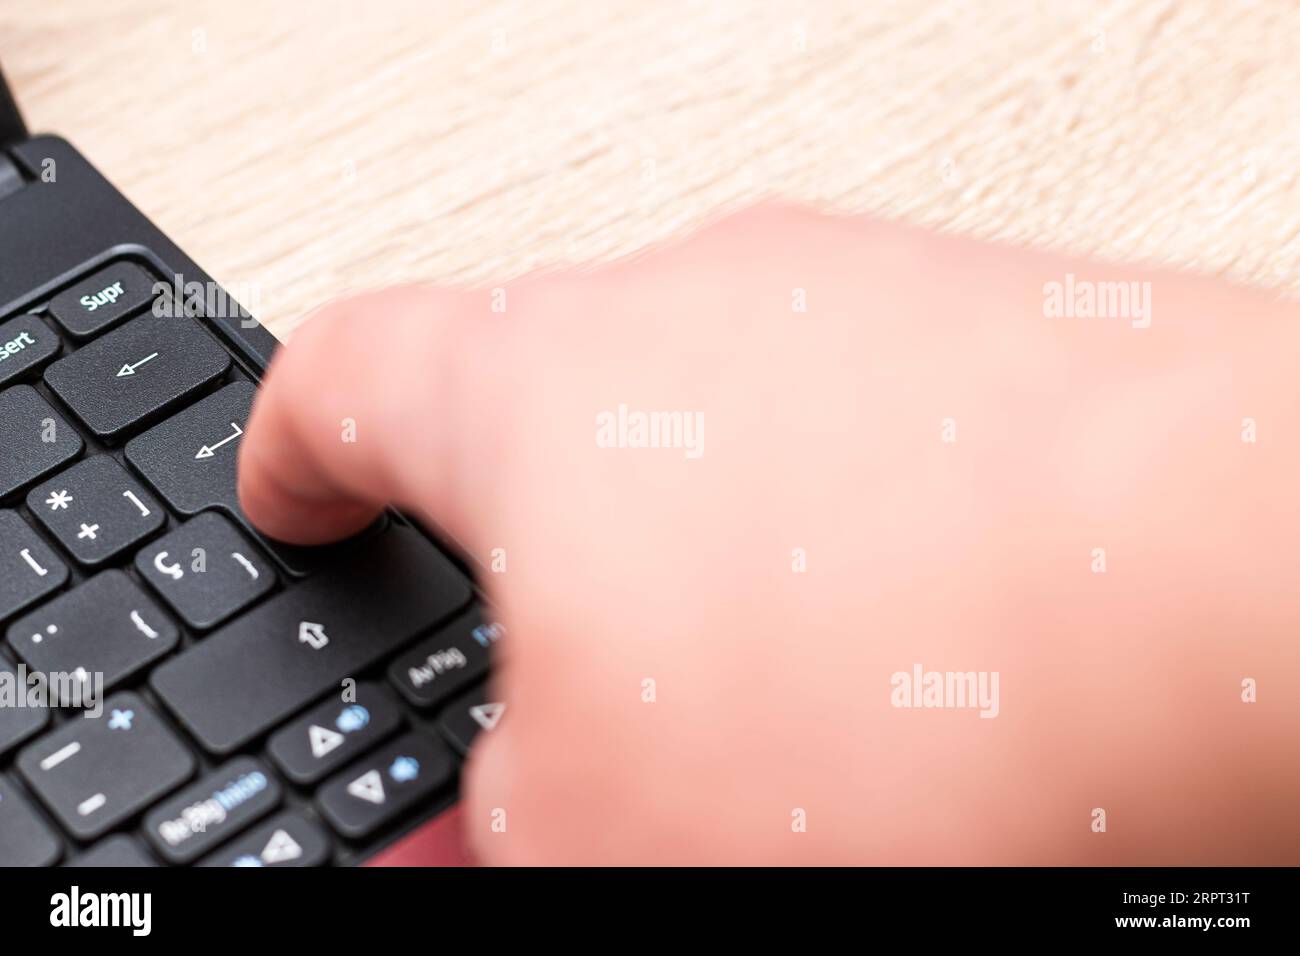 Primo piano del dito indice di una mano umana caucasica che spinge il tasto Invio sulla tastiera di un notebook sopra un tavolo di legno. Foto Stock